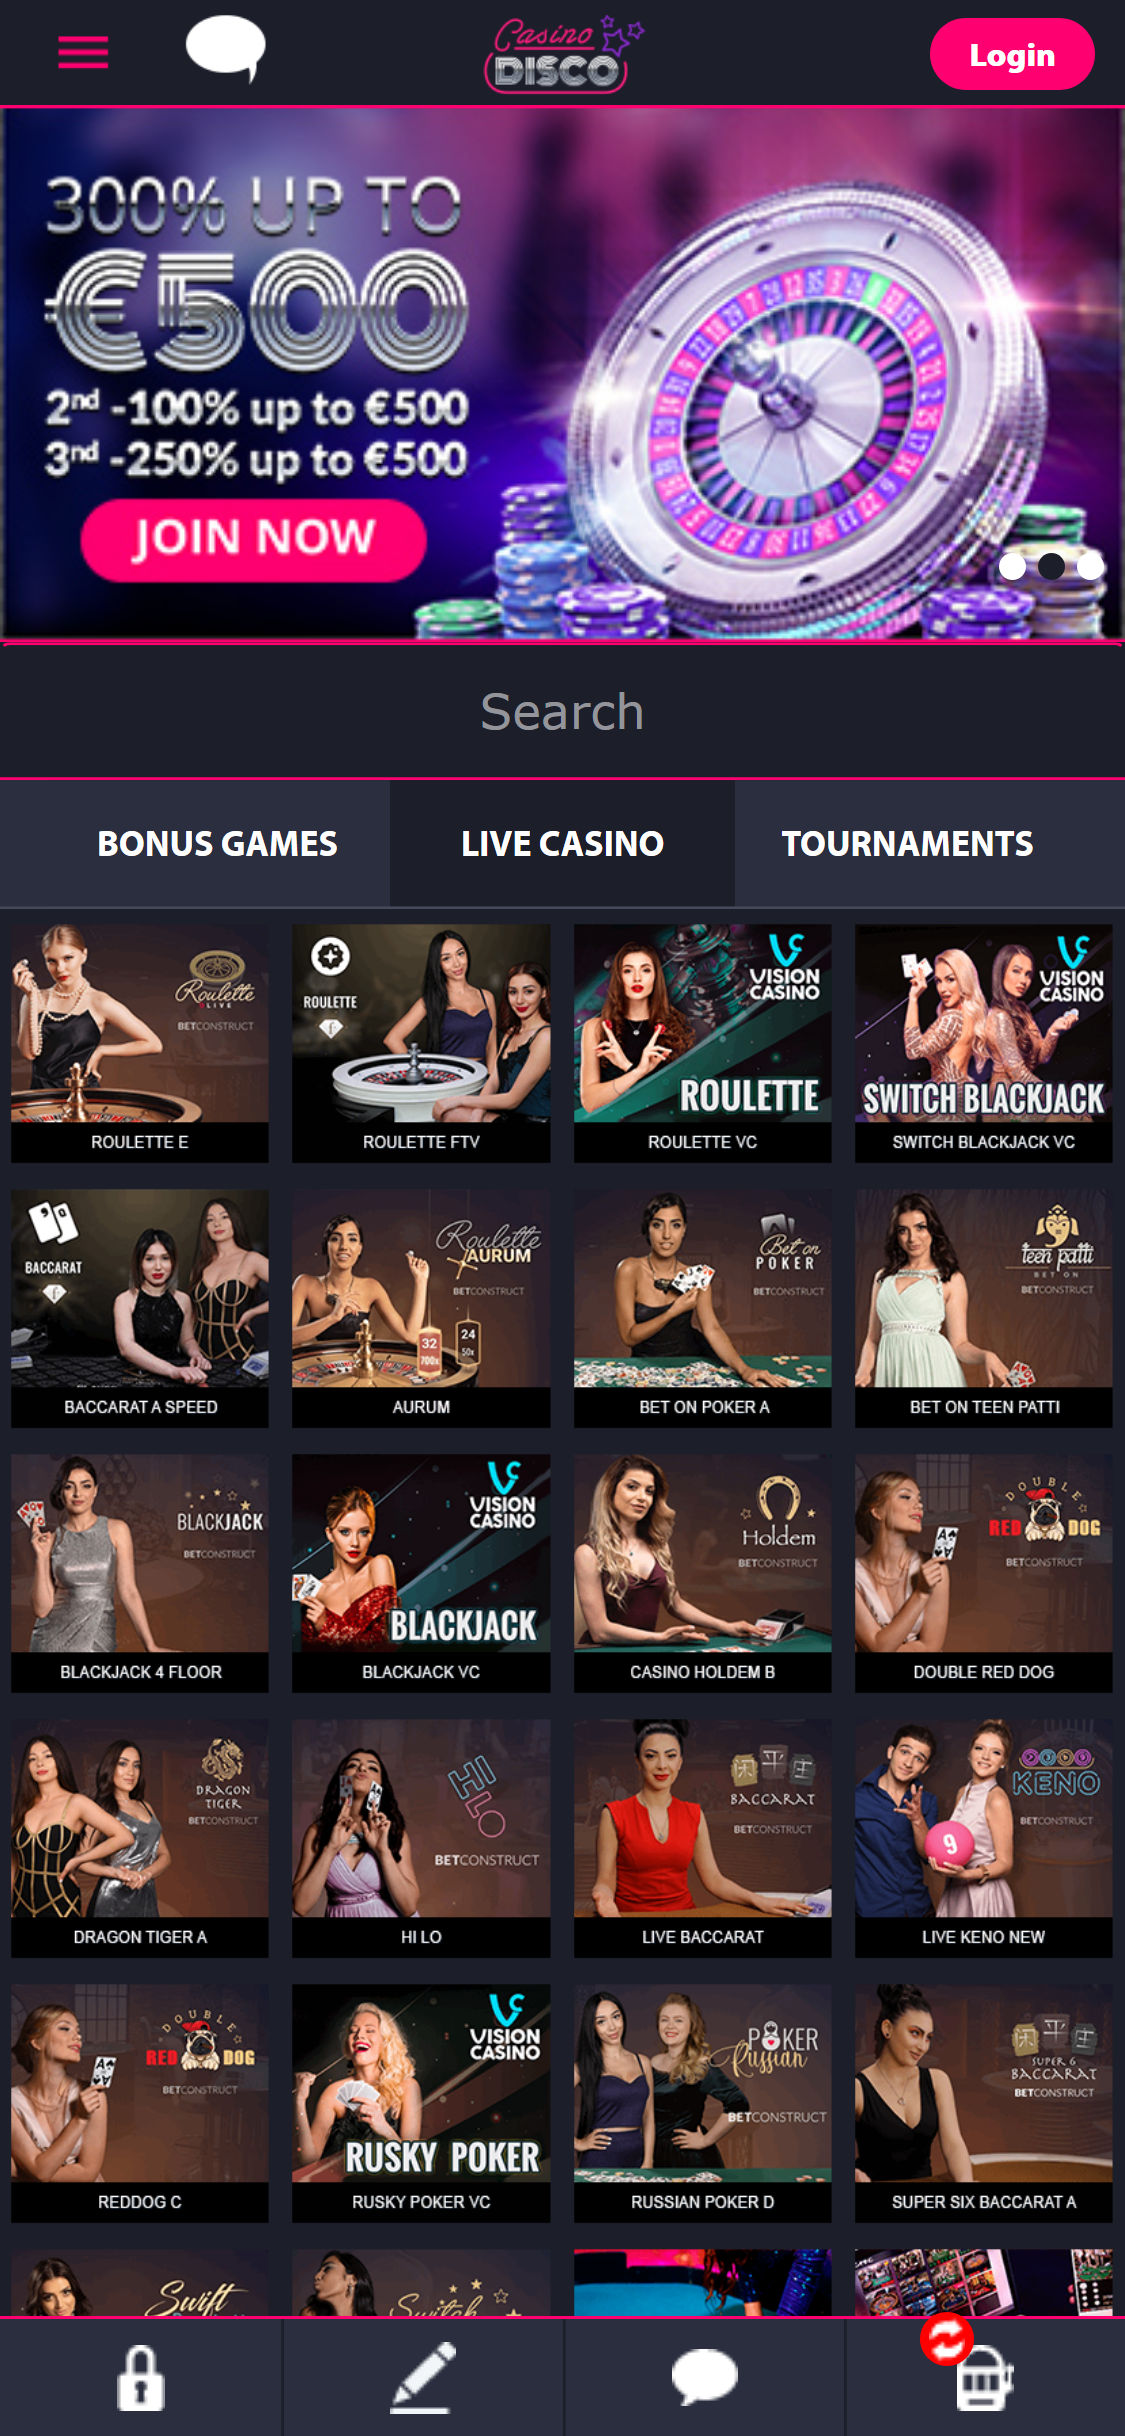 CasinoDisco Mobile Live Dealer Games Review